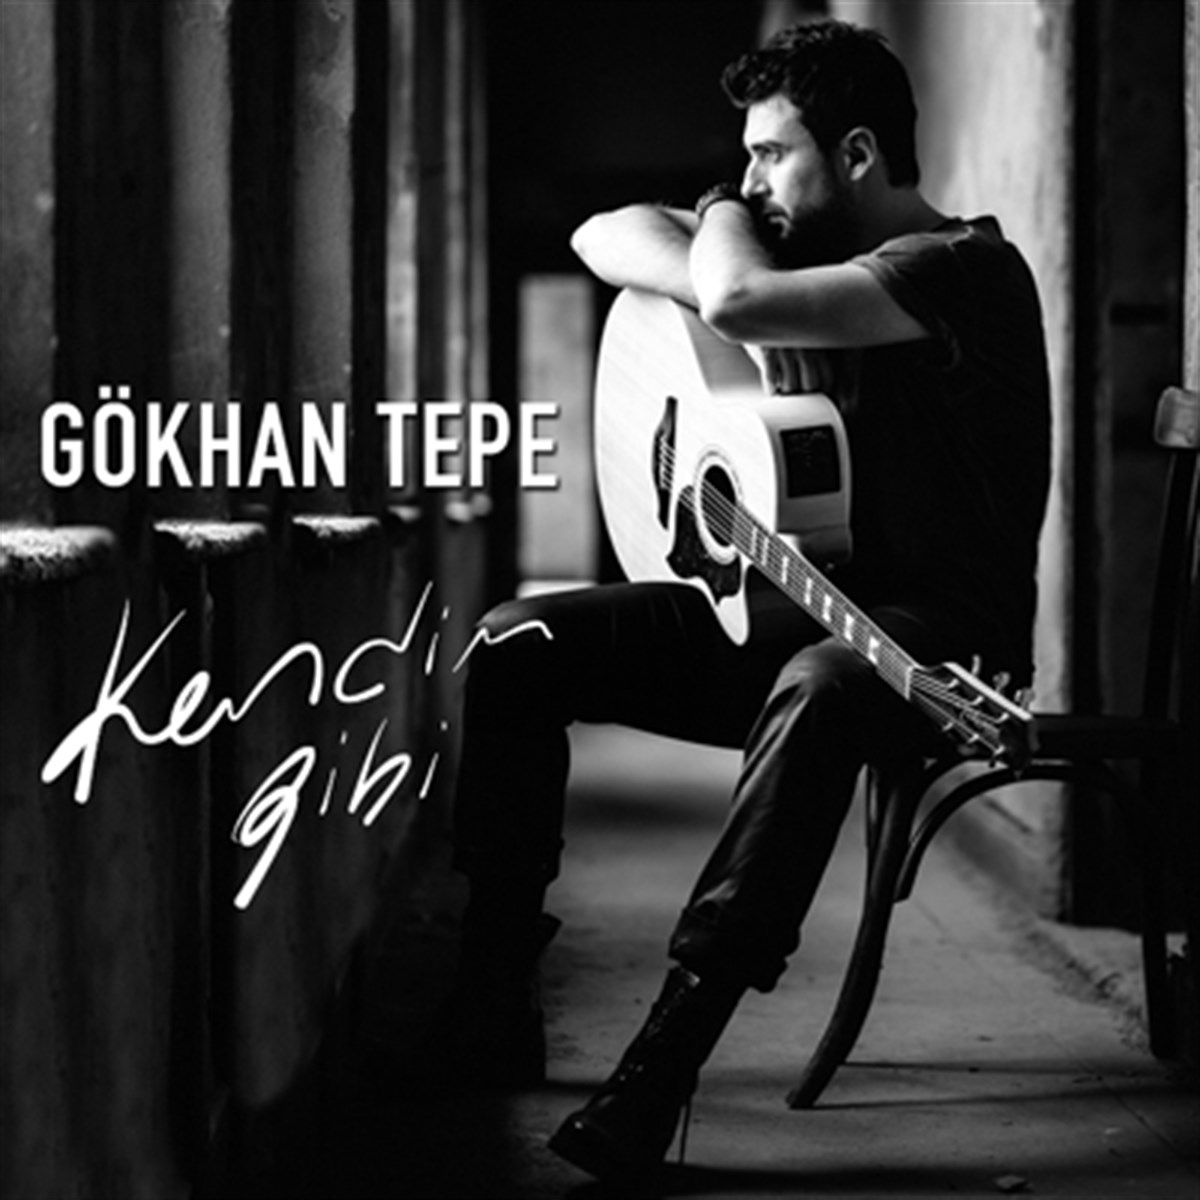 دانلود آلبوم زیبا وشنیدنی از گوکان تپه Gokhan Tepe بنام Kendim Gibi